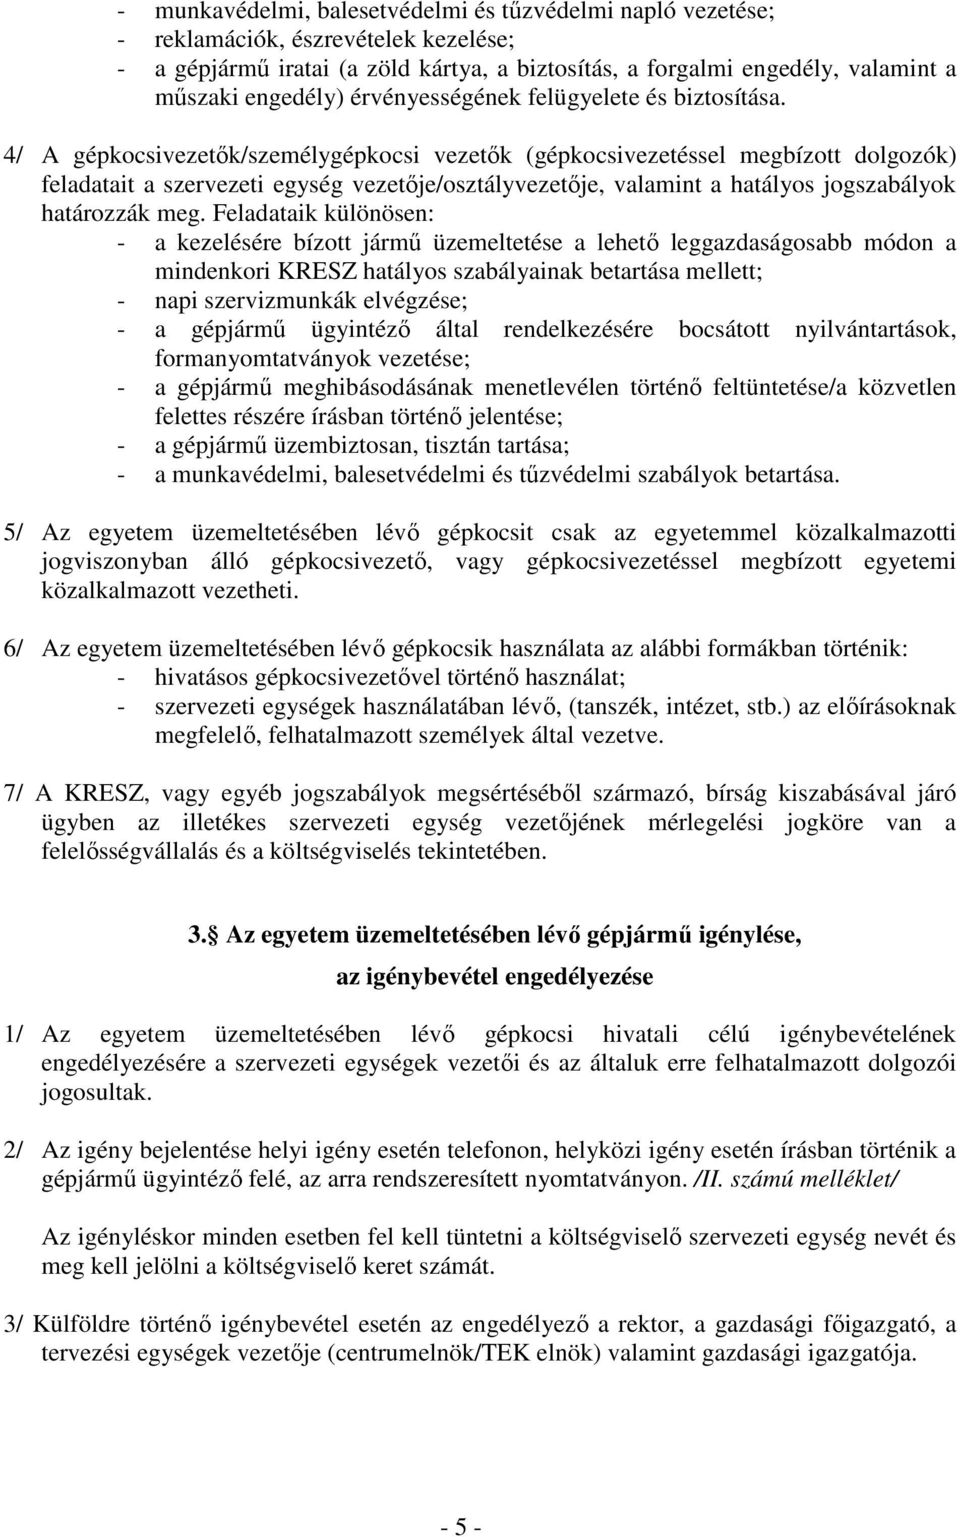 4/ A gépkocsivezetık/személygépkocsi vezetık (gépkocsivezetéssel megbízott dolgozók) feladatait a szervezeti egység vezetıje/osztályvezetıje, valamint a hatályos jogszabályok határozzák meg.